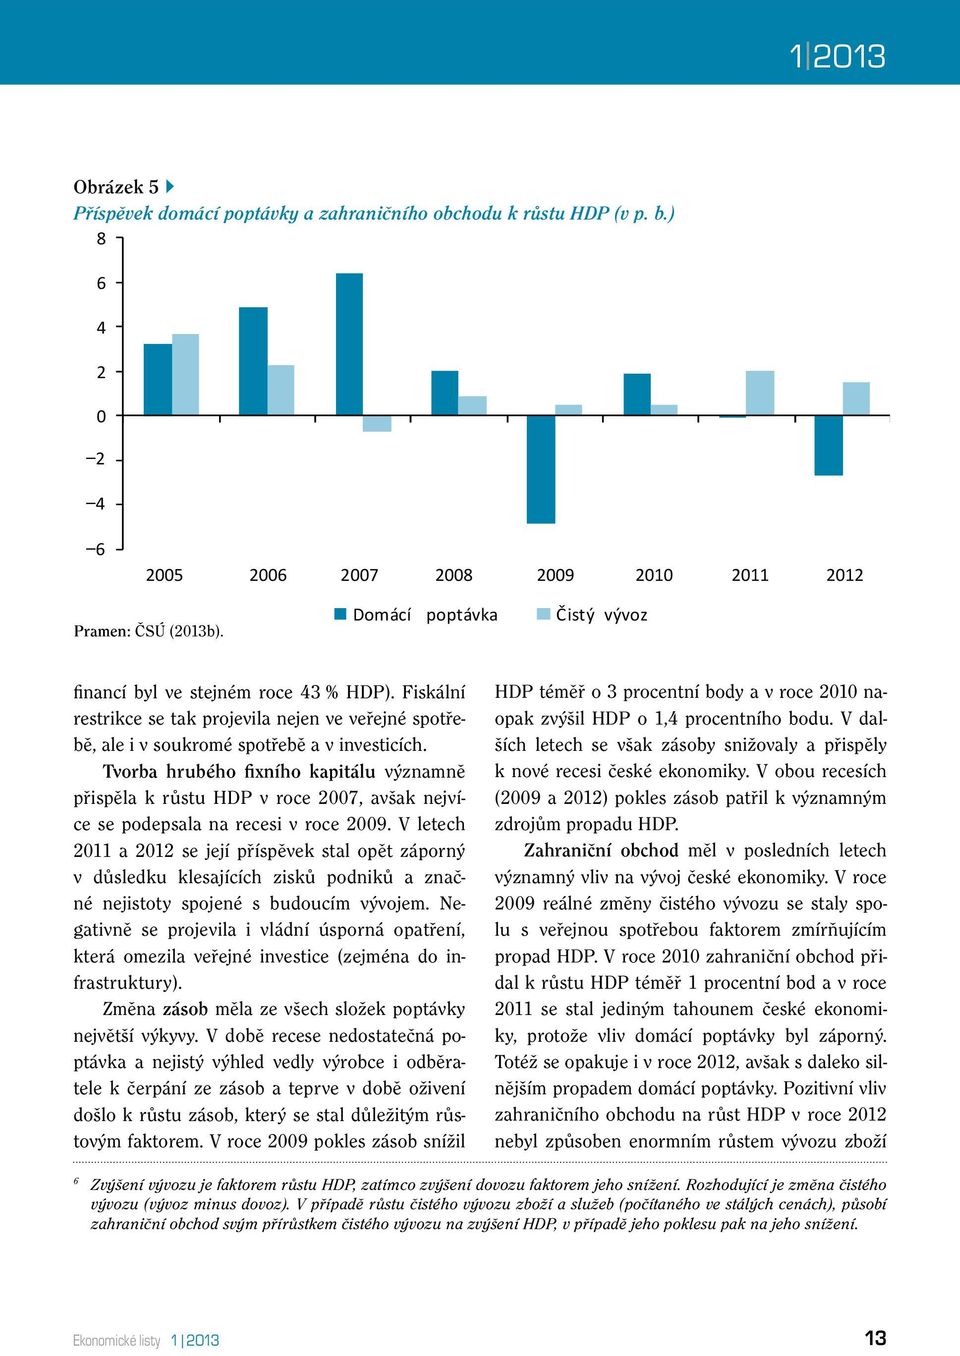 Tvorba hrubého fixního kapitálu významně přispěla k růstu HDP v roce 2007, avšak nejvíce se podepsala na recesi v roce 2009.